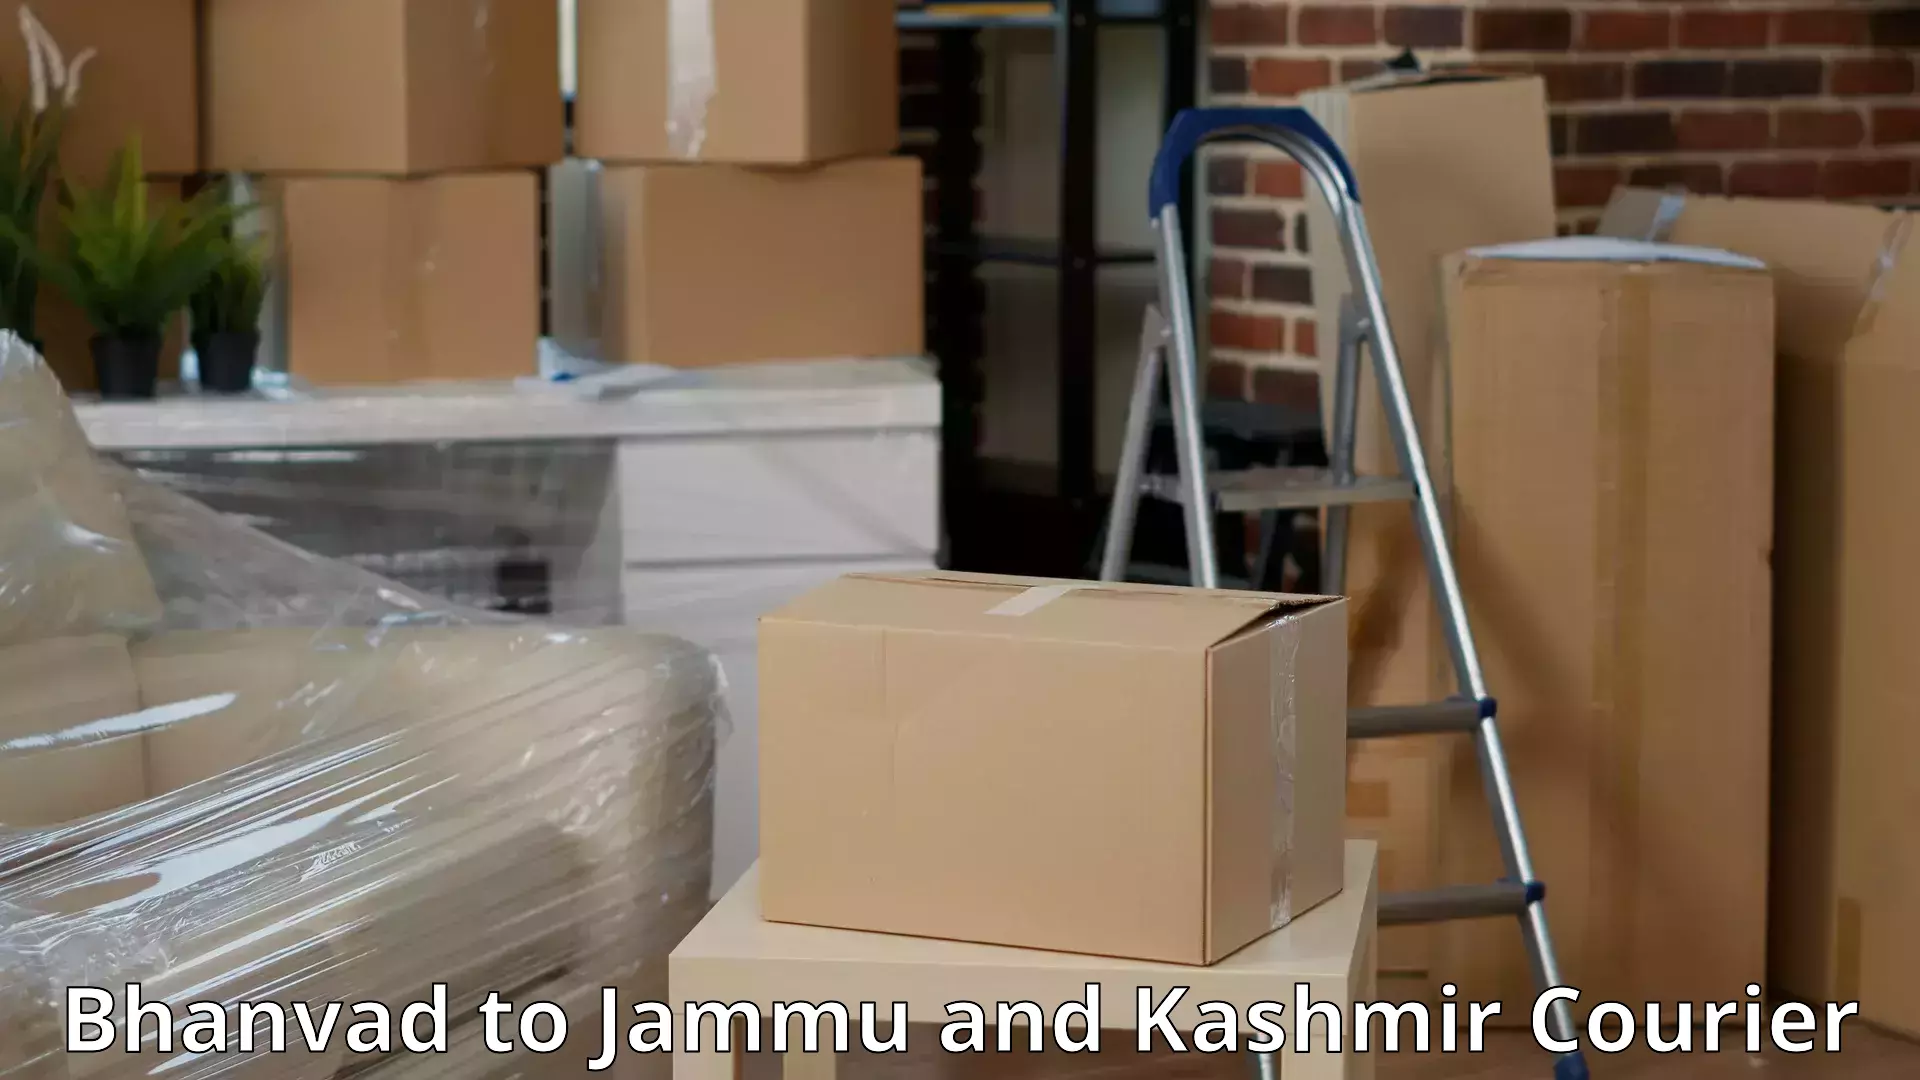 Furniture delivery service Bhanvad to Kishtwar